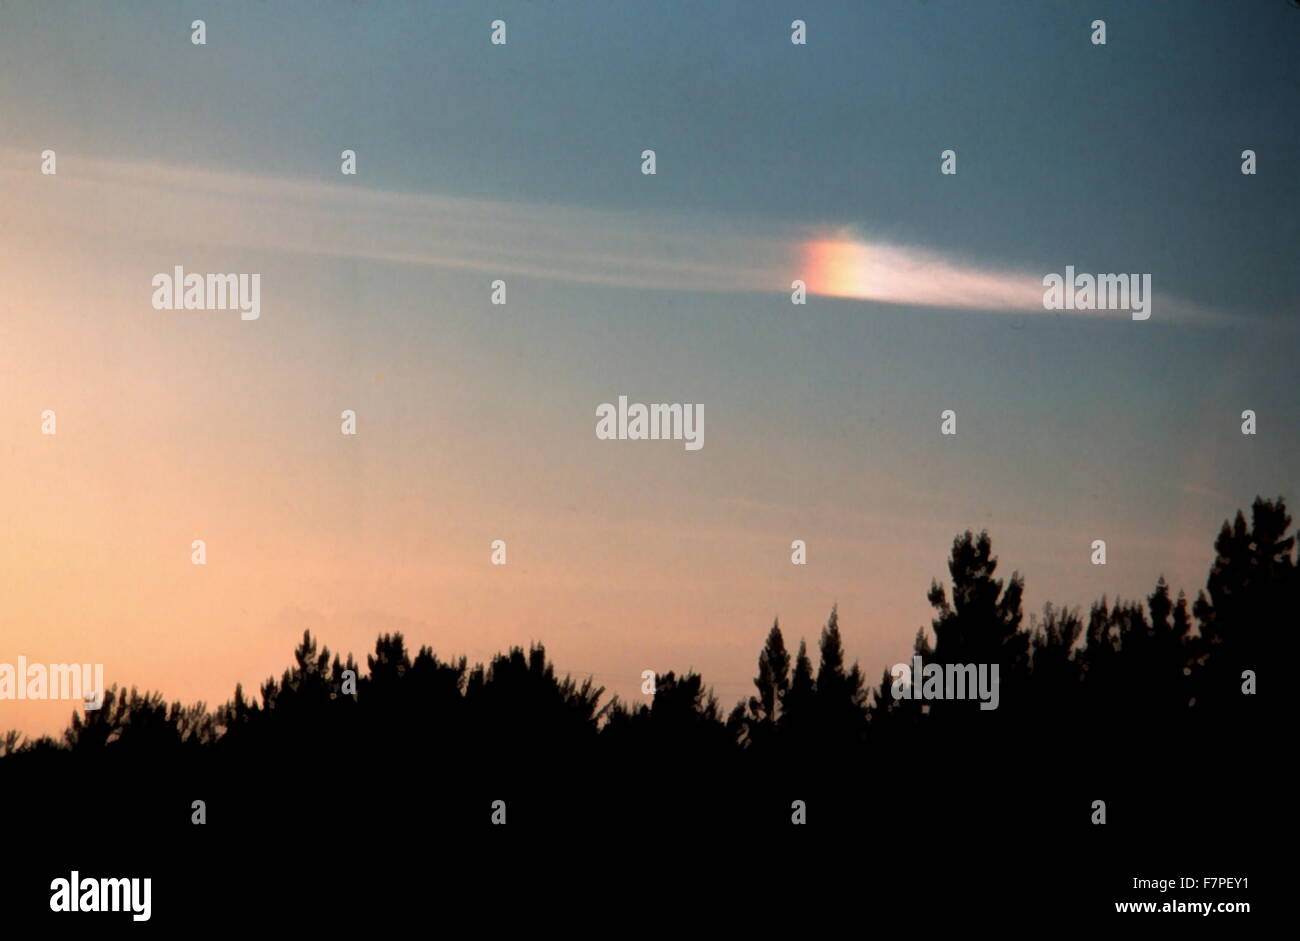 Foto von einem Parhelion, ein atmosphärisches Phänomen, das in der Sonne, aus ein paar helle Flecken auf beiden Seiten besteht oft gemeinsam auftreten, mit einem leuchtenden Ring. Fotografiert von Ralph F. Kresge. Vom 1978 Stockfoto